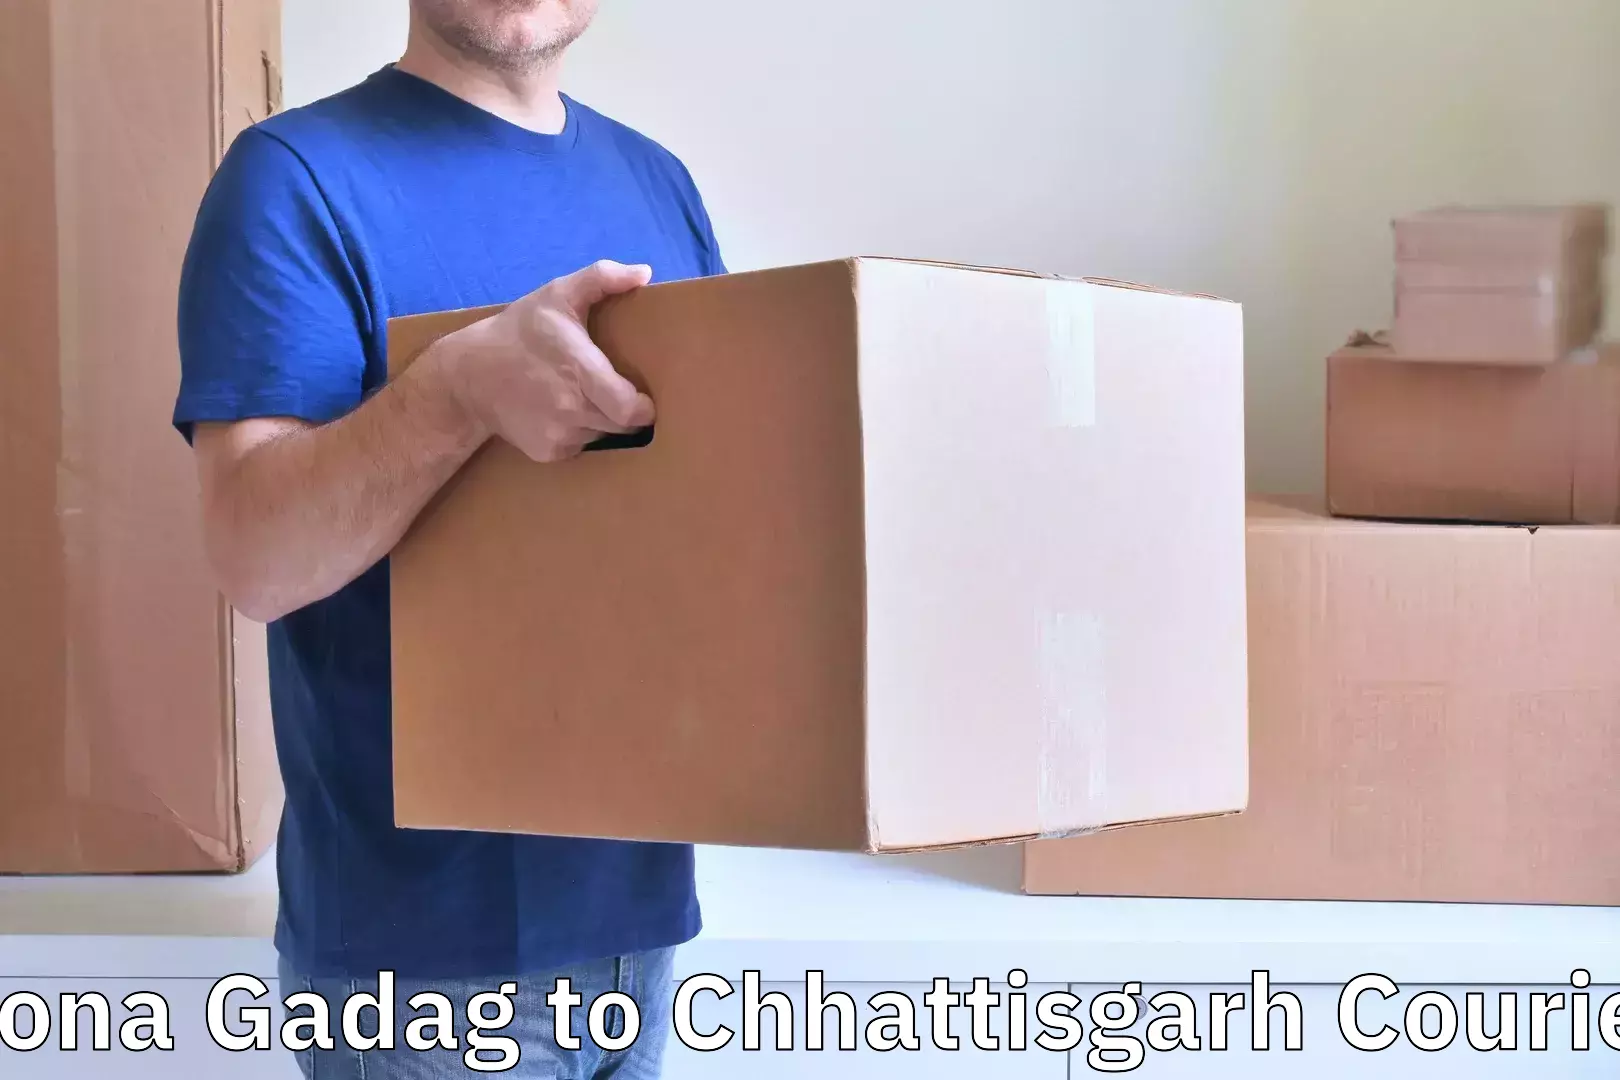 Baggage delivery estimate in Rona Gadag to Chhattisgarh